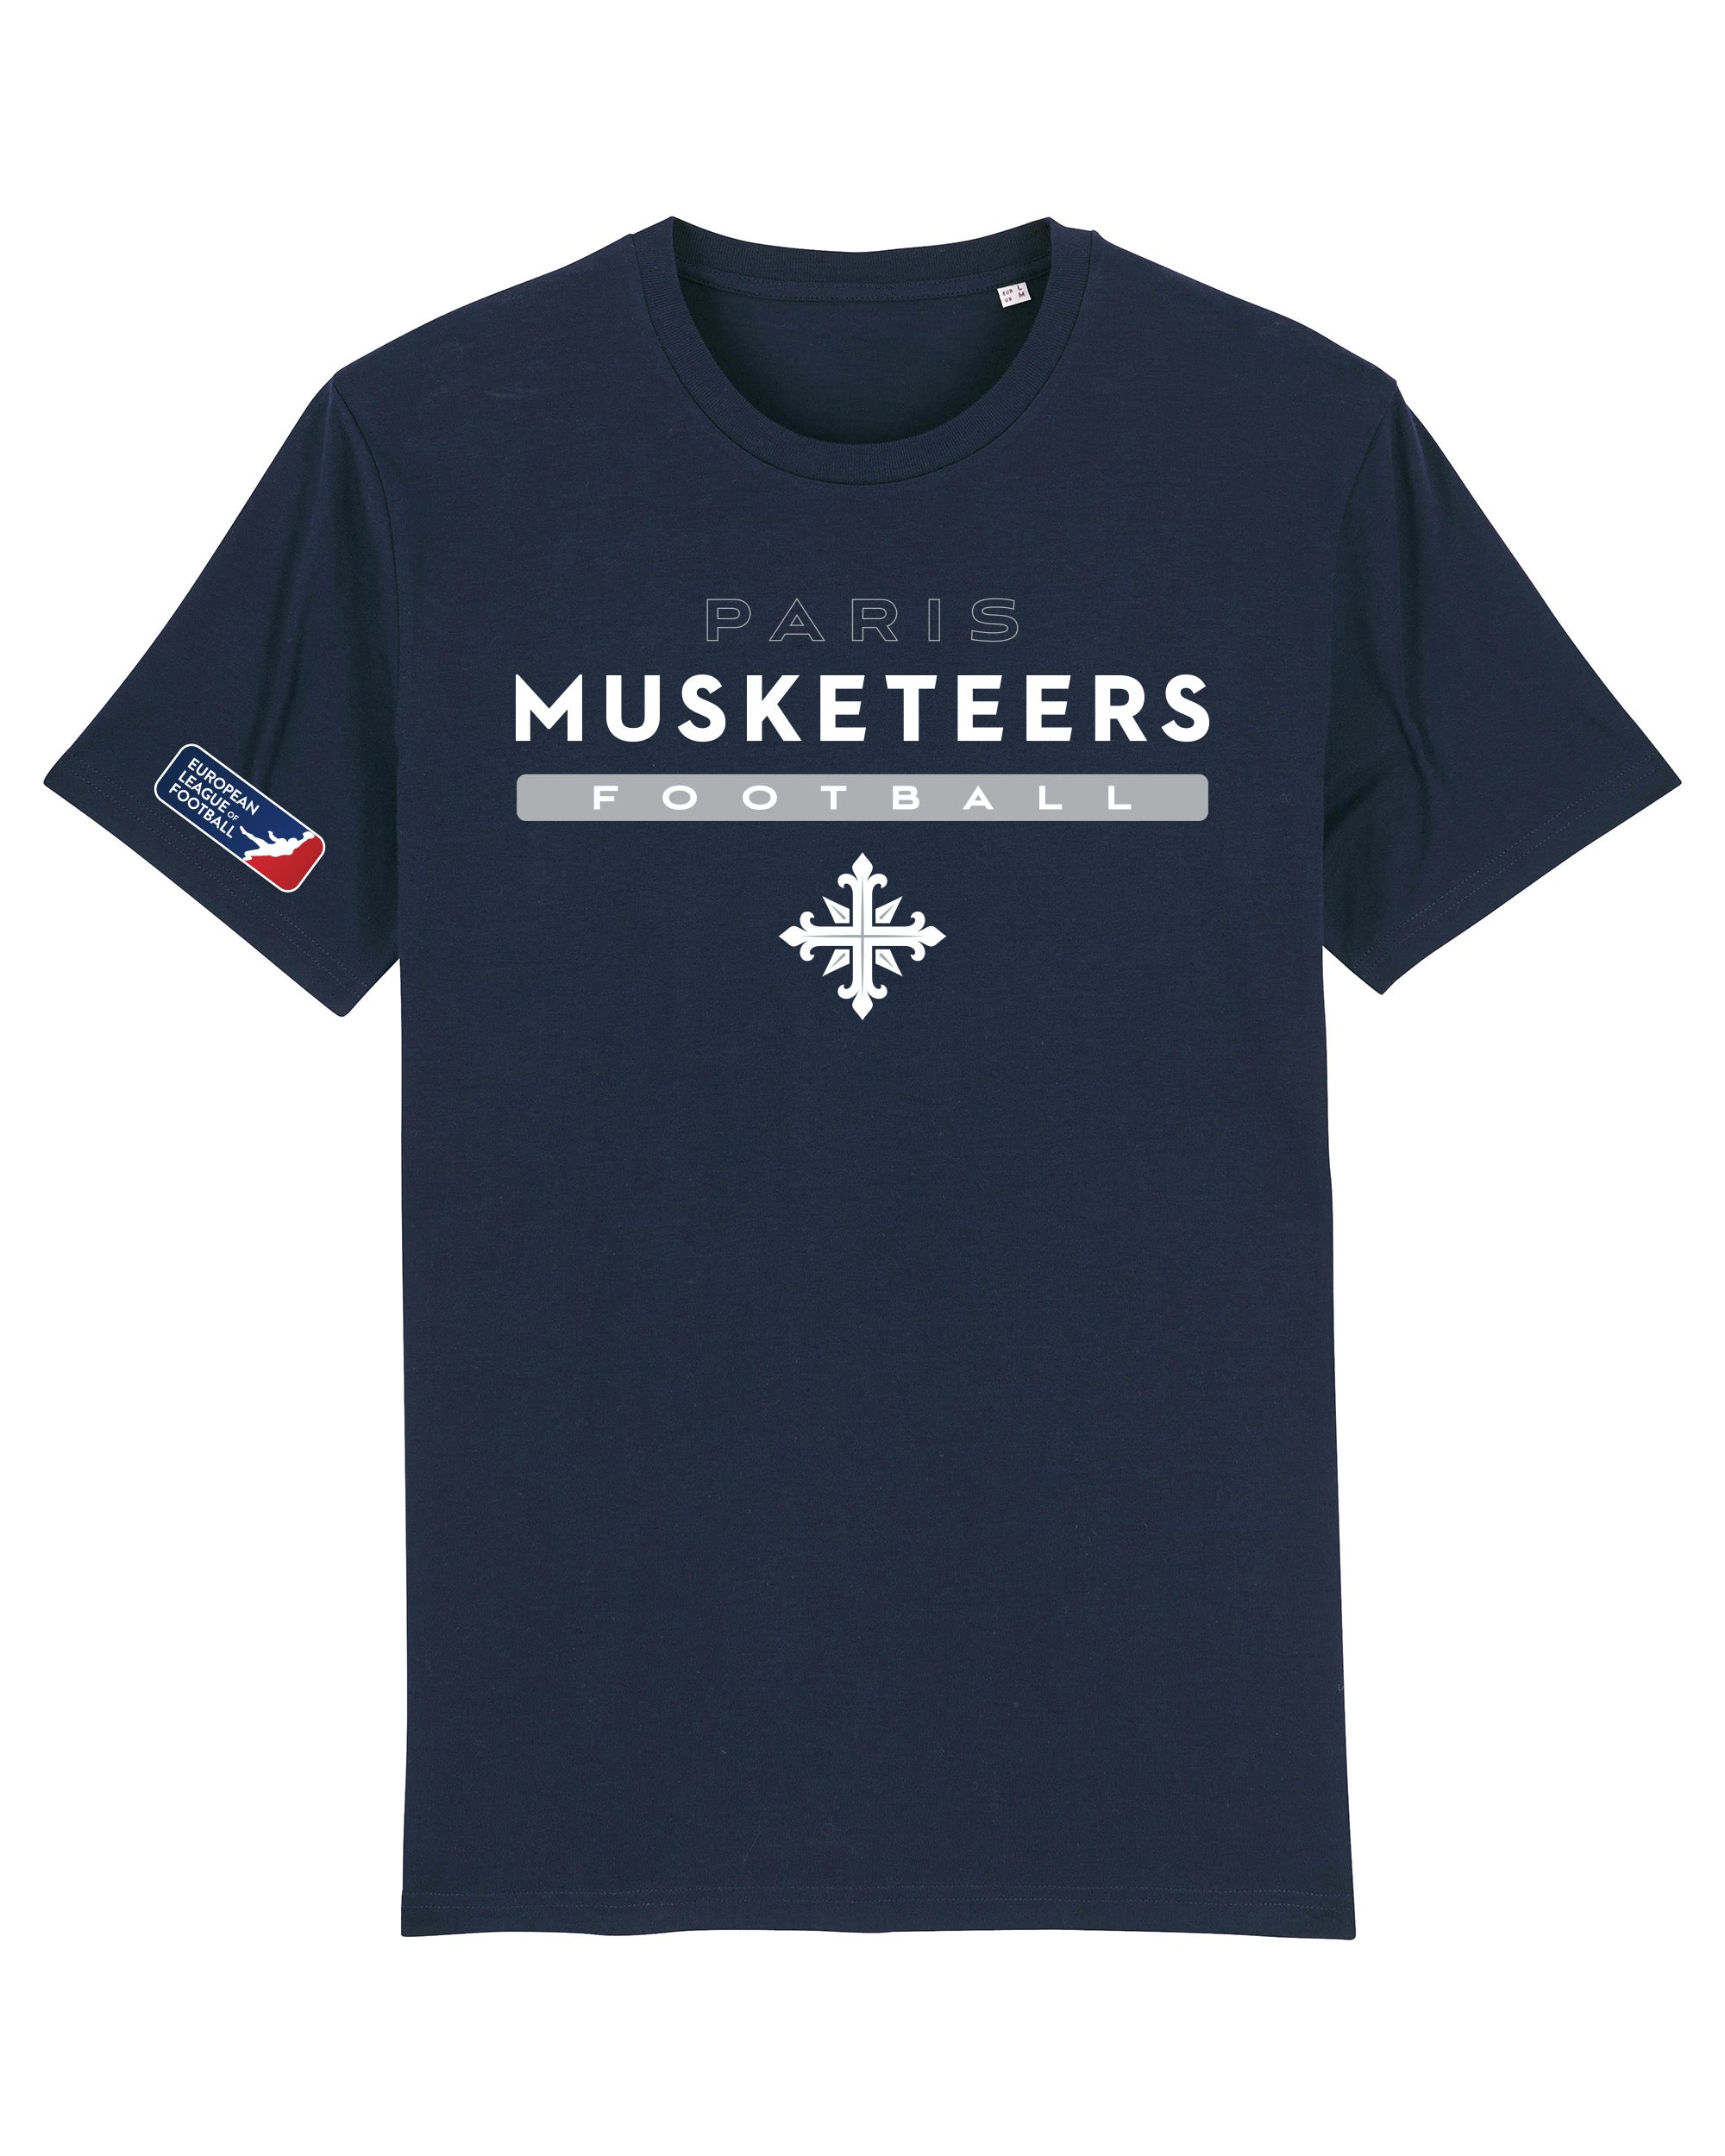 Paris Musketeers Identity Longsleeve | /products/paris-musketeers ...